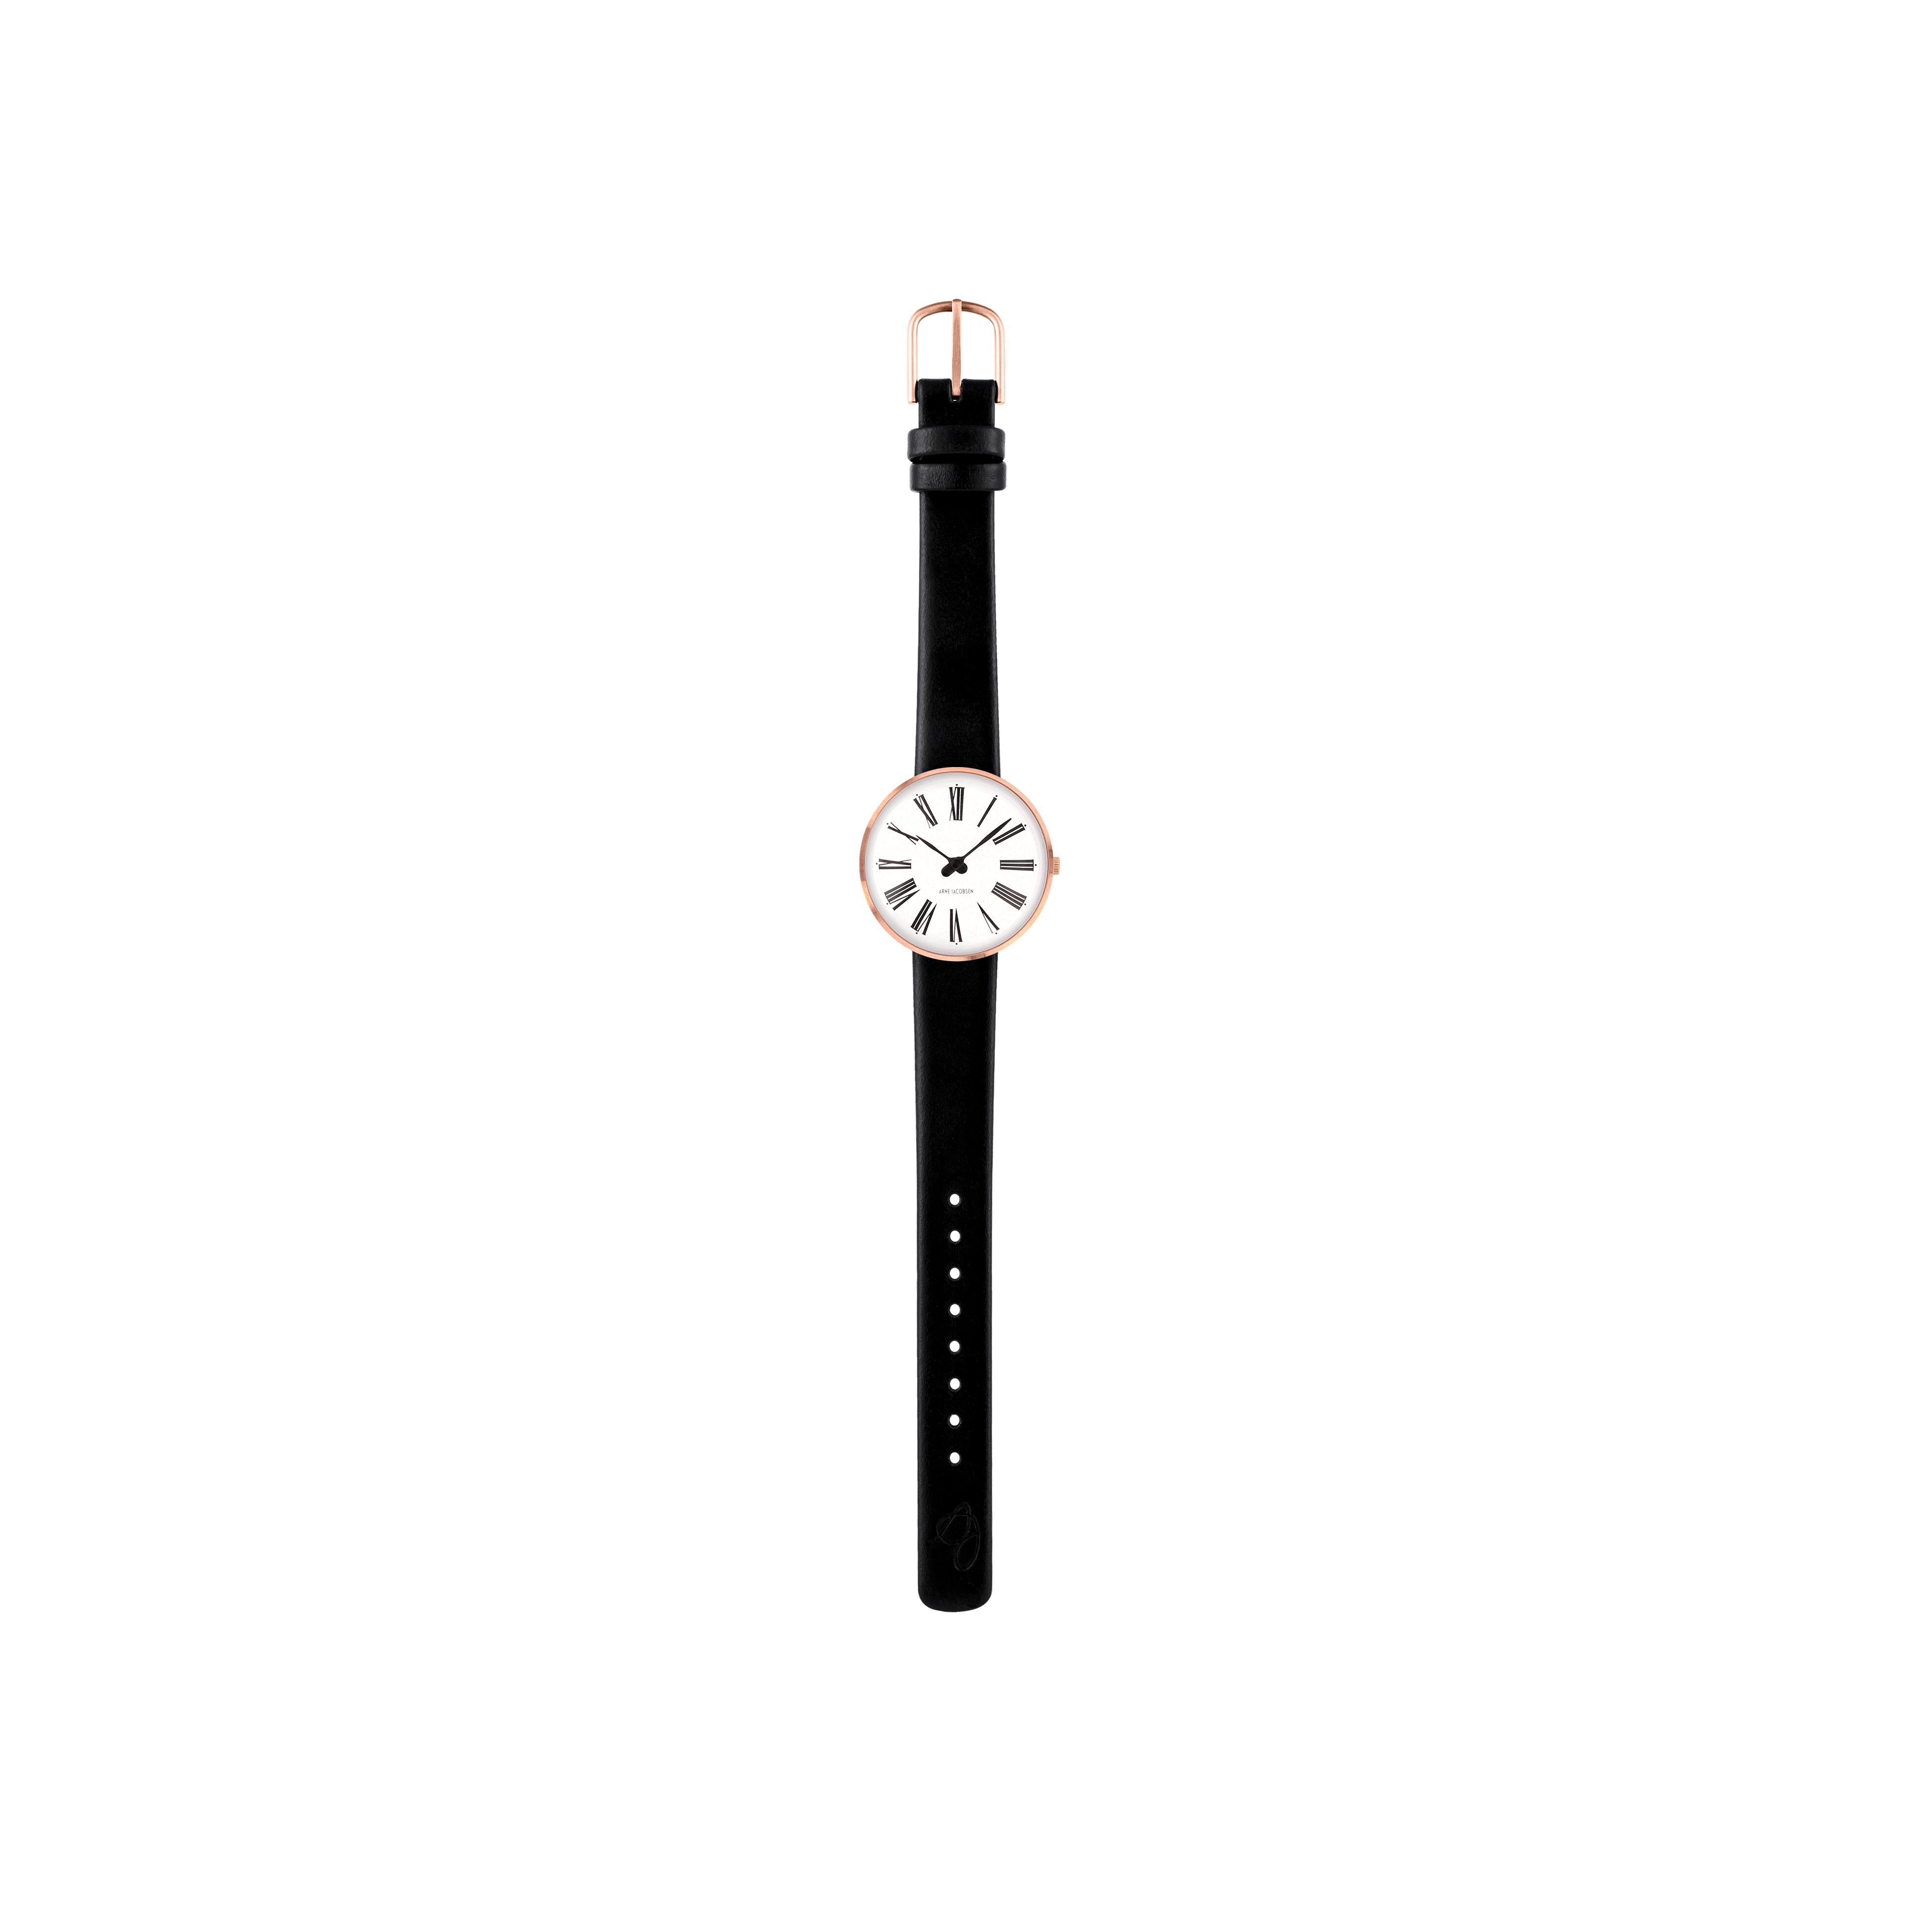 Arne Jacobsen Roman armbånd klokke Ø30, rosé/svart stropp